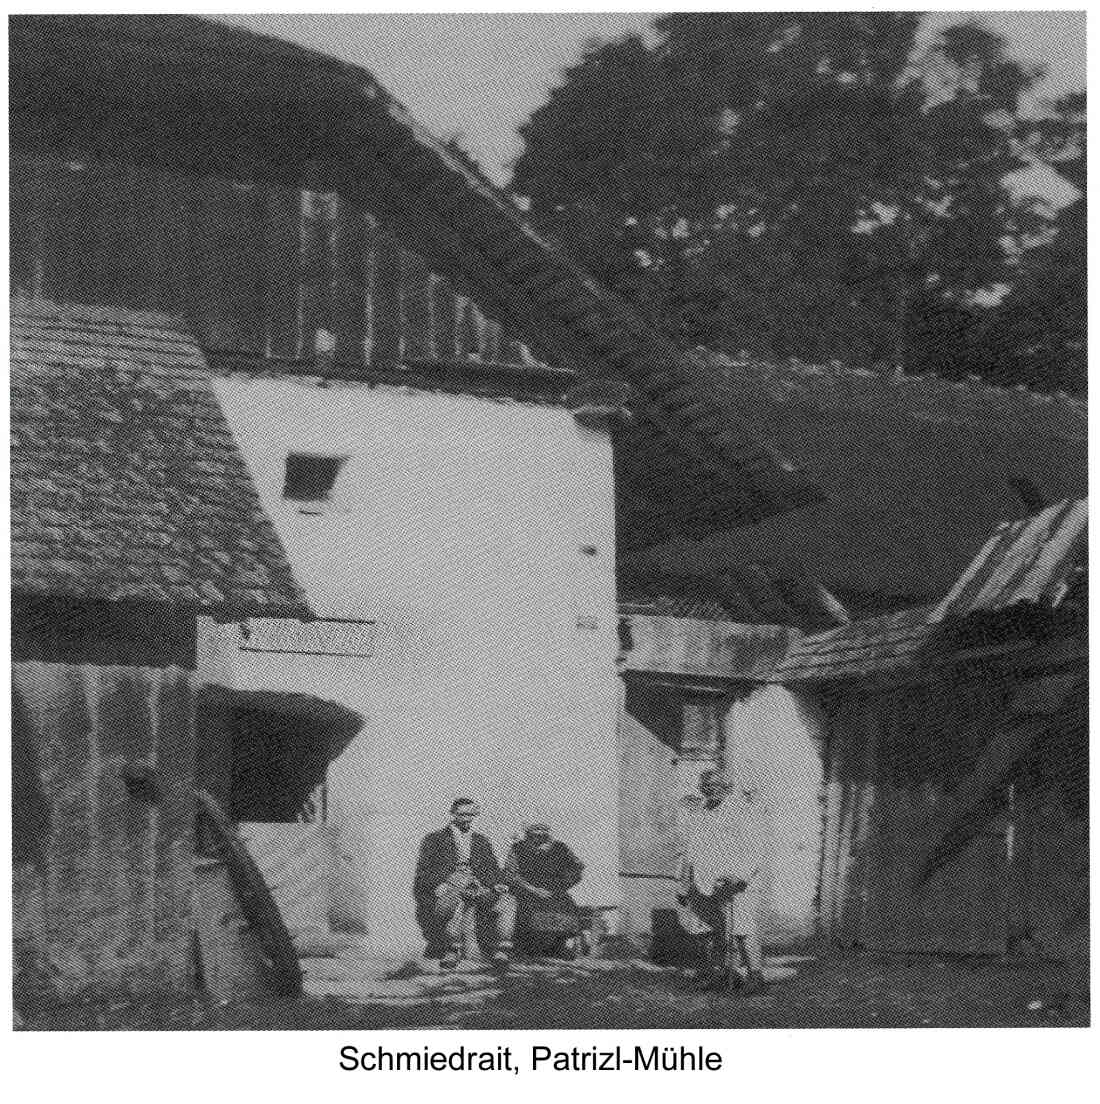 Patrizl-Mühle, Schmiedrait